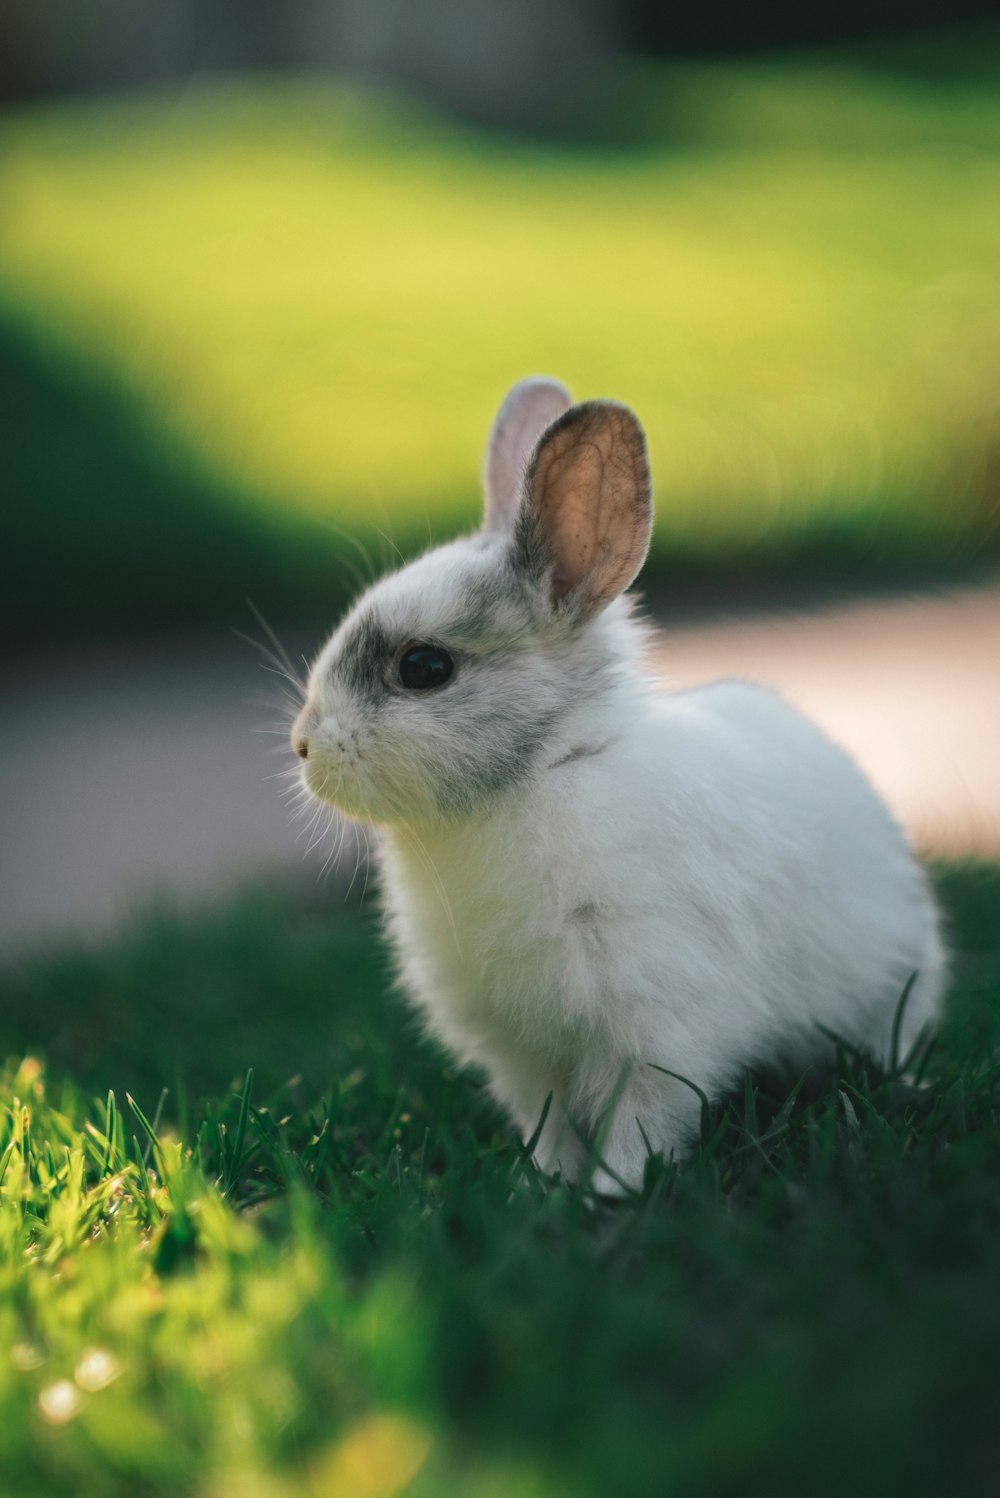 Joli adorable lapin doux blanc assis sur une pelouse d'herbe verte